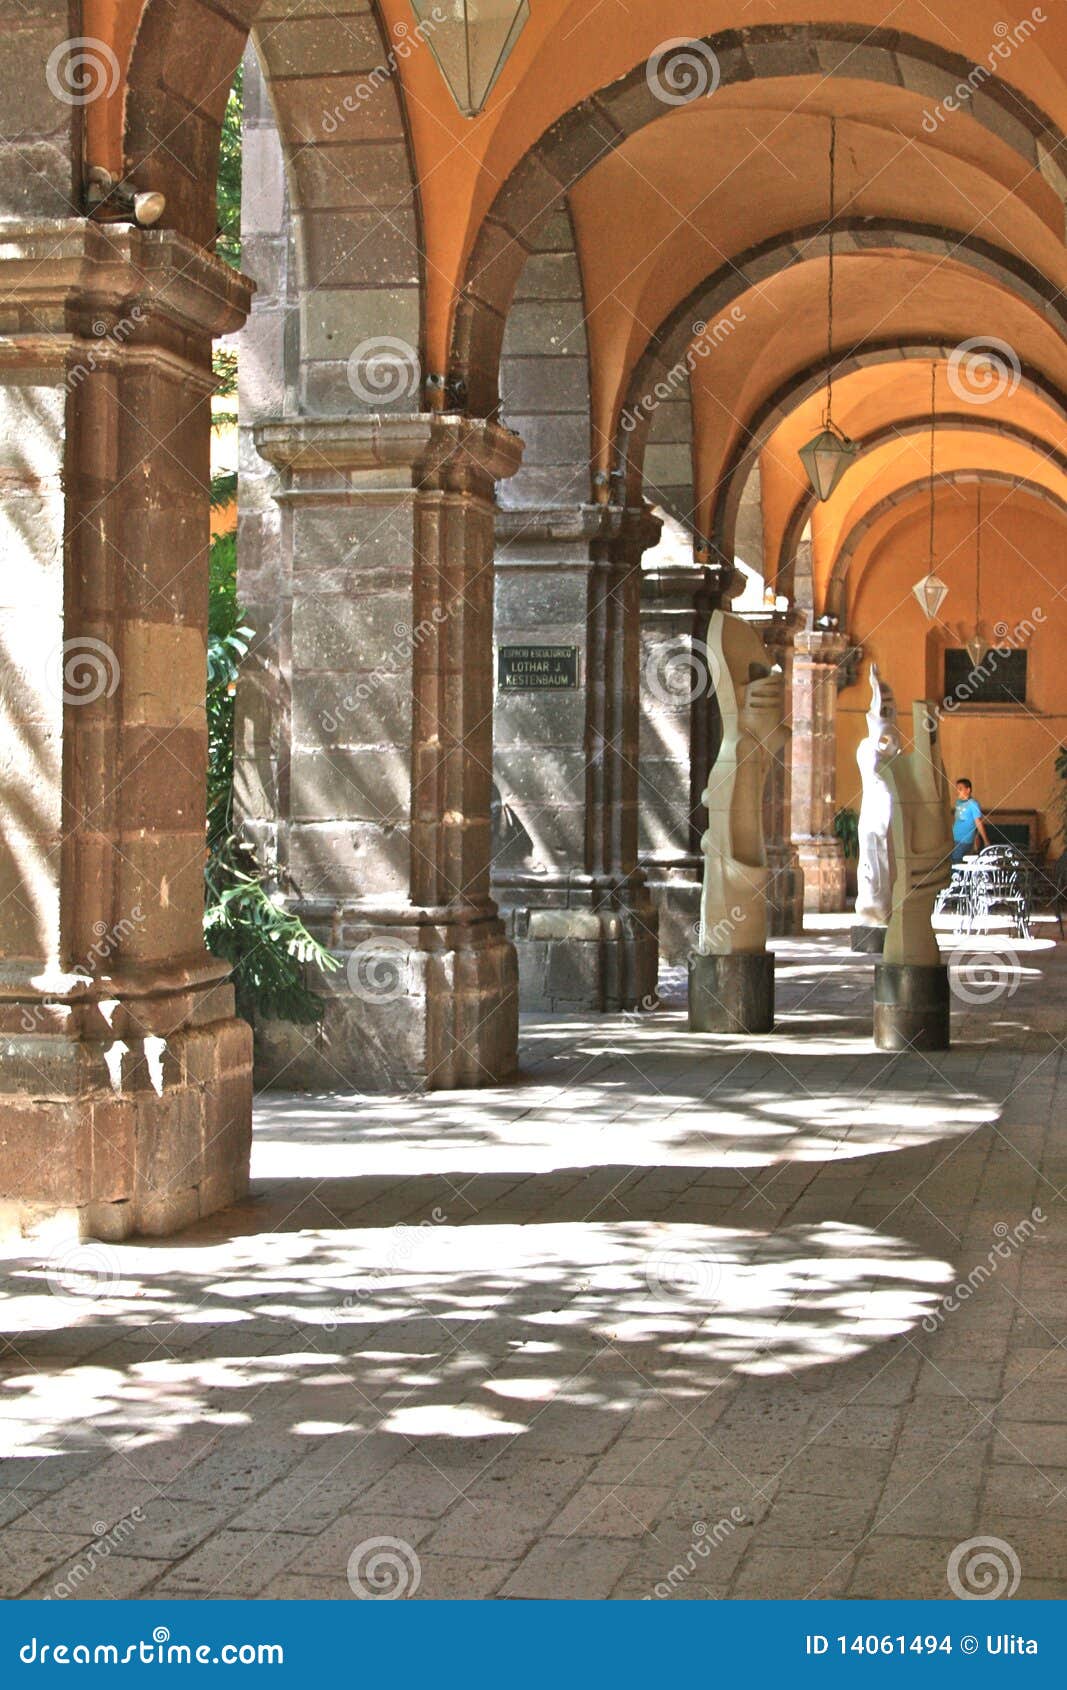 archway inside bellas artes, san miguel de allende